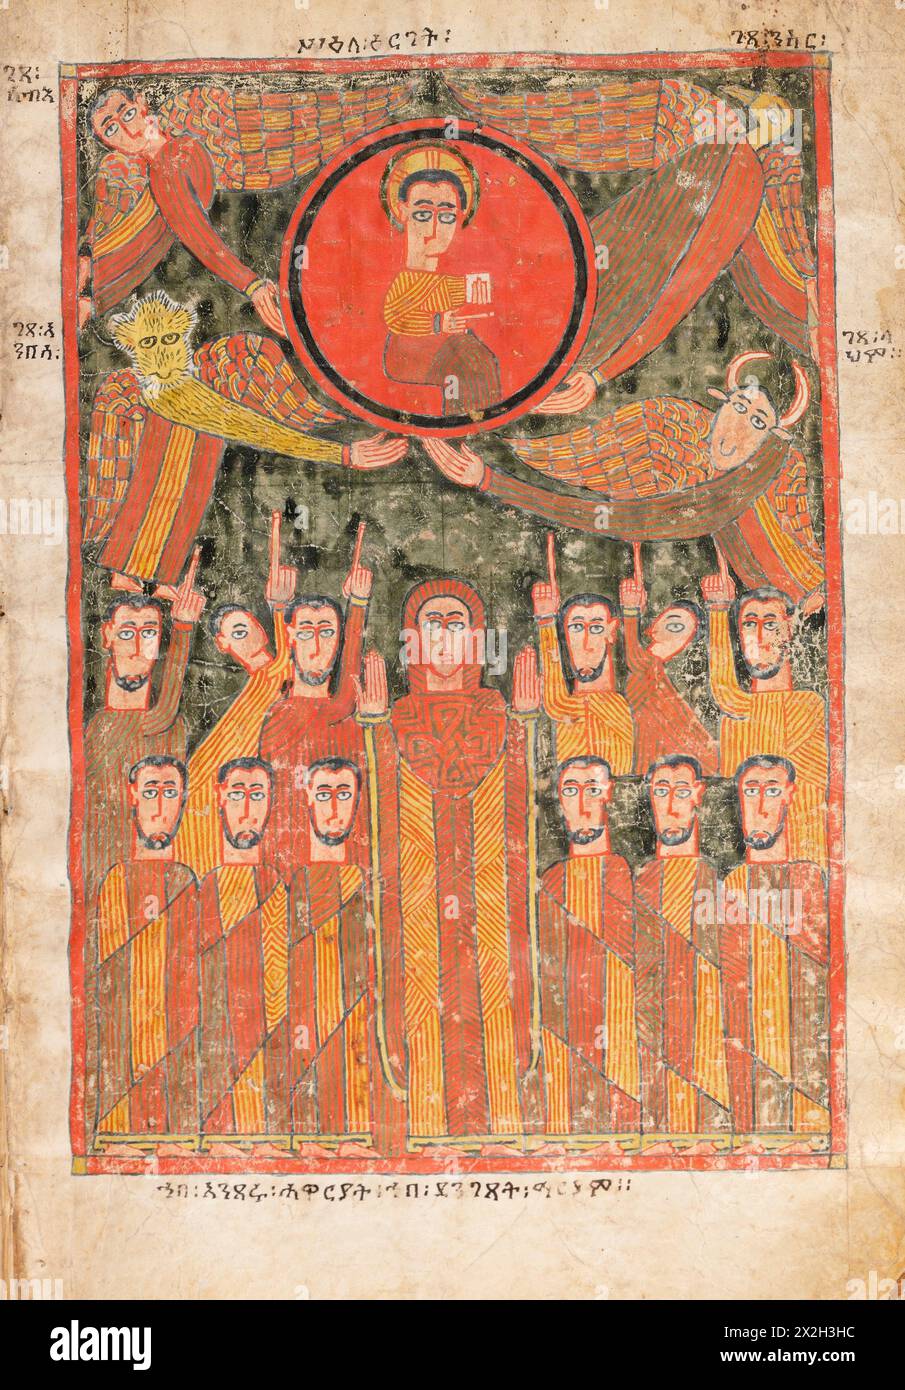 Evangile illuminé - peuples Amhara - L'action - fin du XIVe au début du XVe siècle Banque D'Images